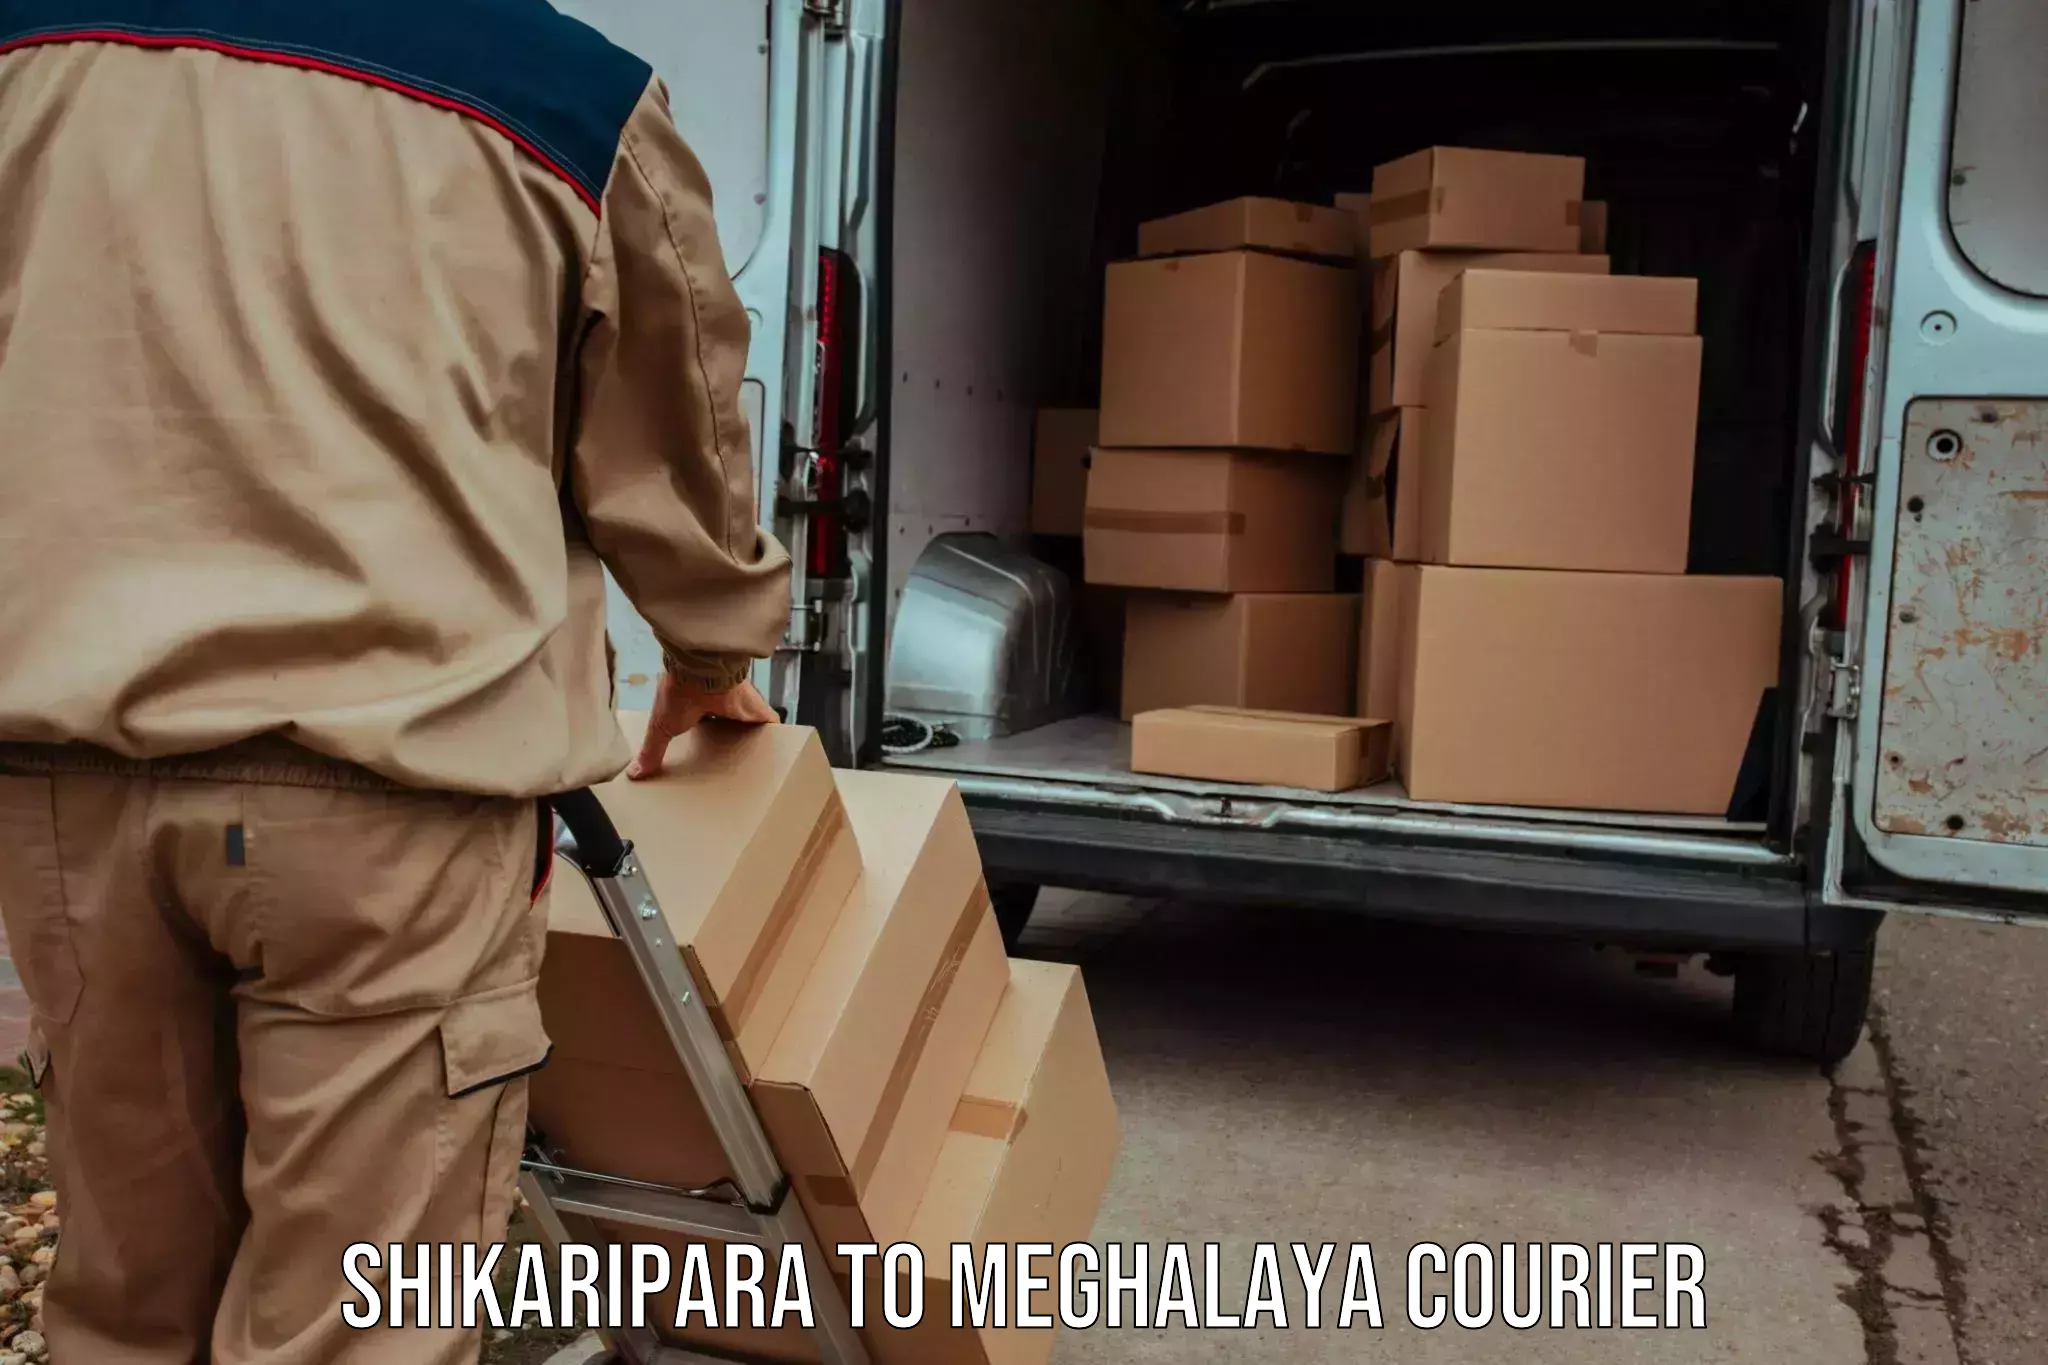 Global freight services Shikaripara to Meghalaya